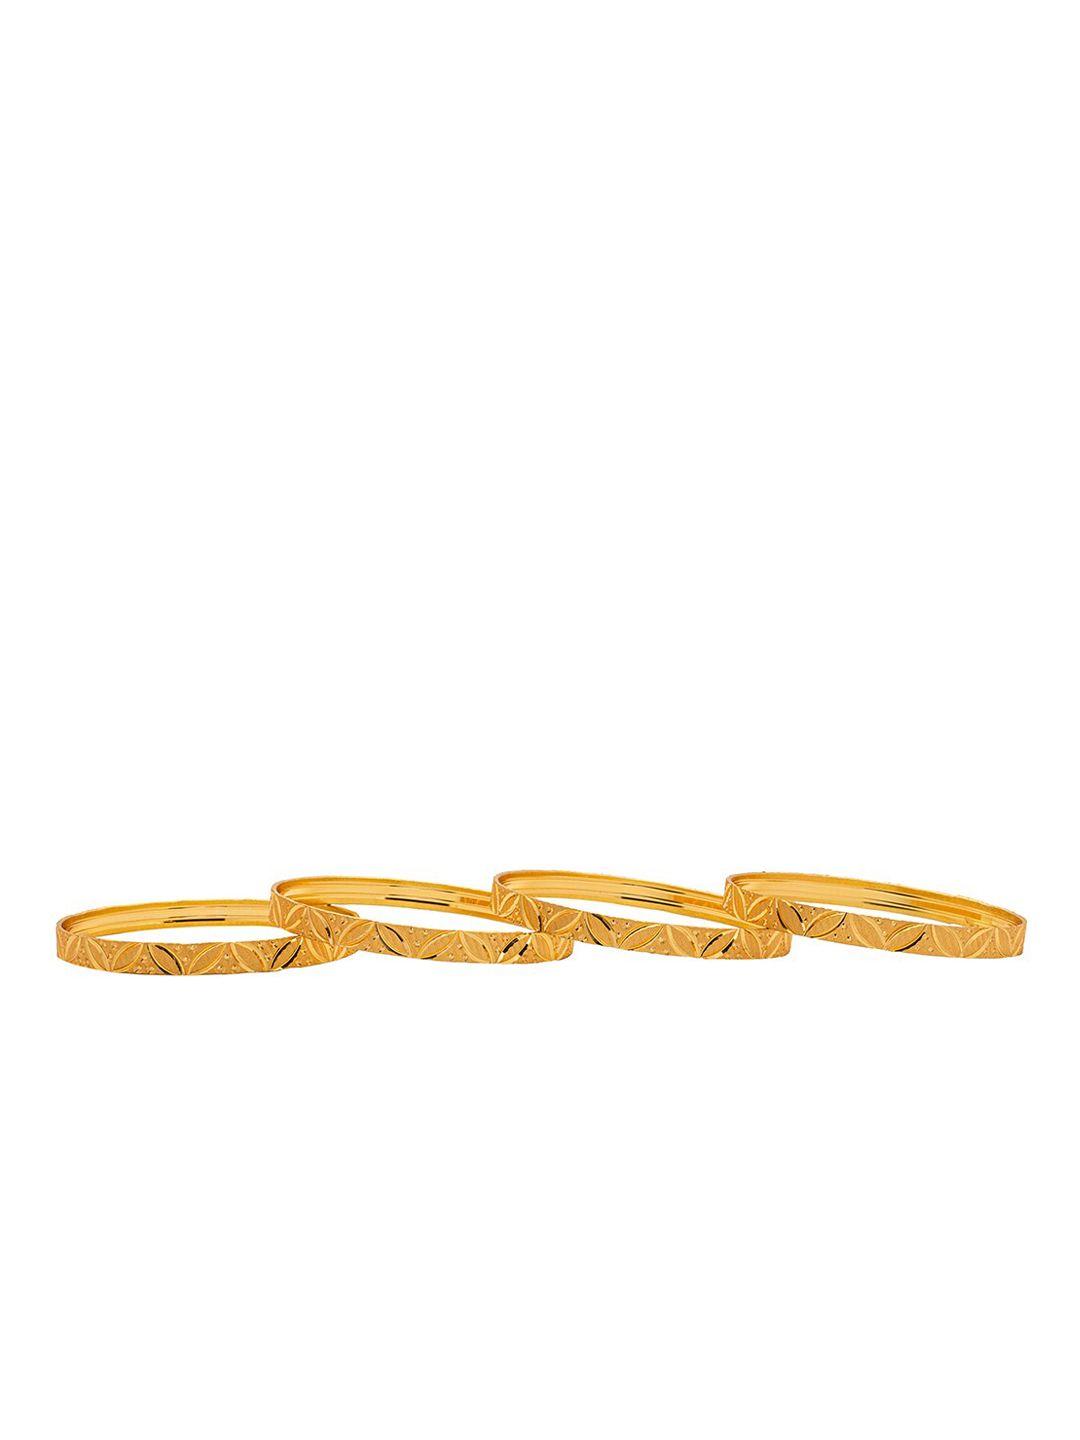 shining-jewel---by-shivansh-set-of-4-gold-plated-bangle